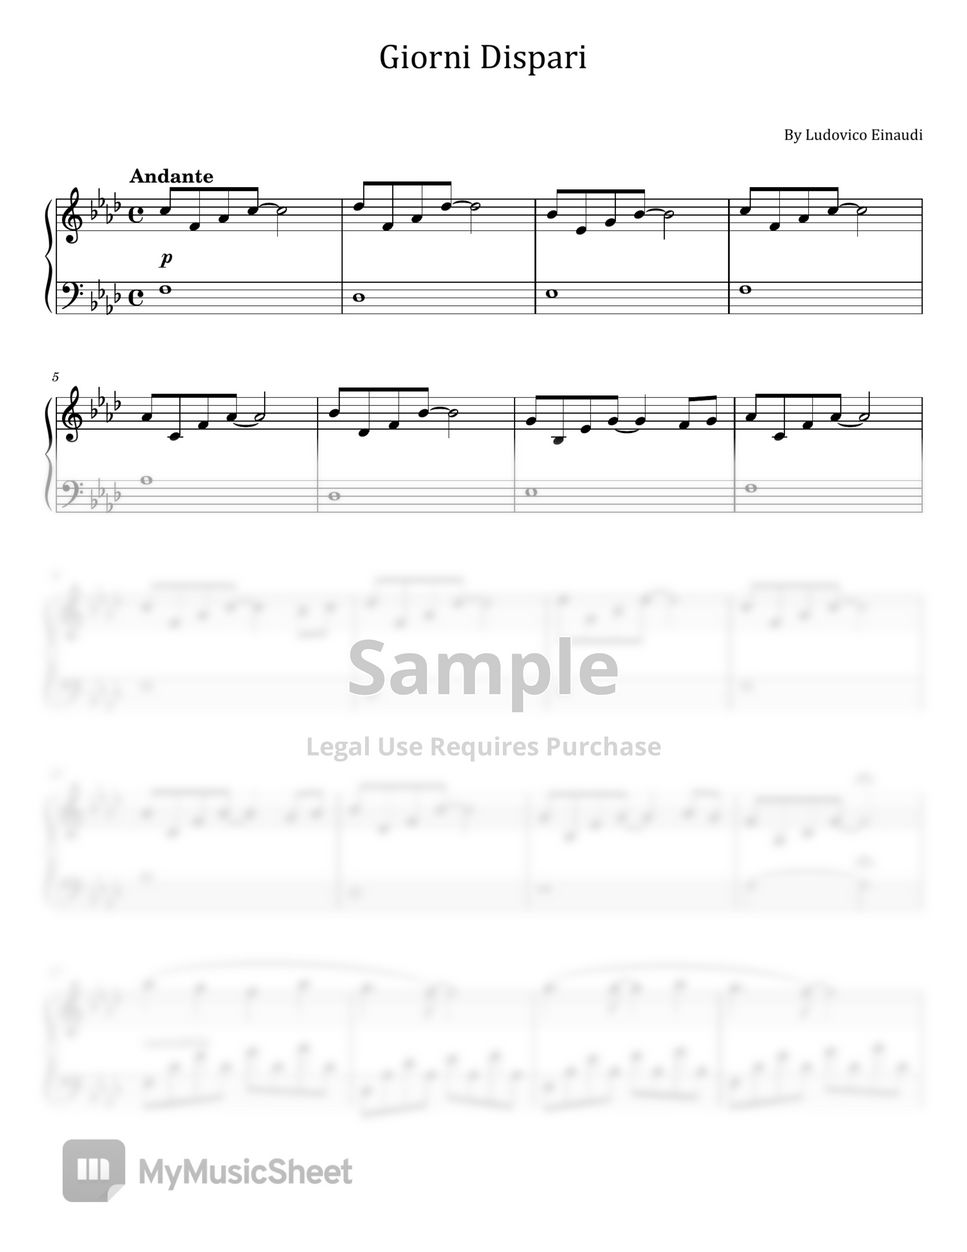 Ludovico Einaudi - Giorni Dispari (For Piano Solo) Sheets by poon